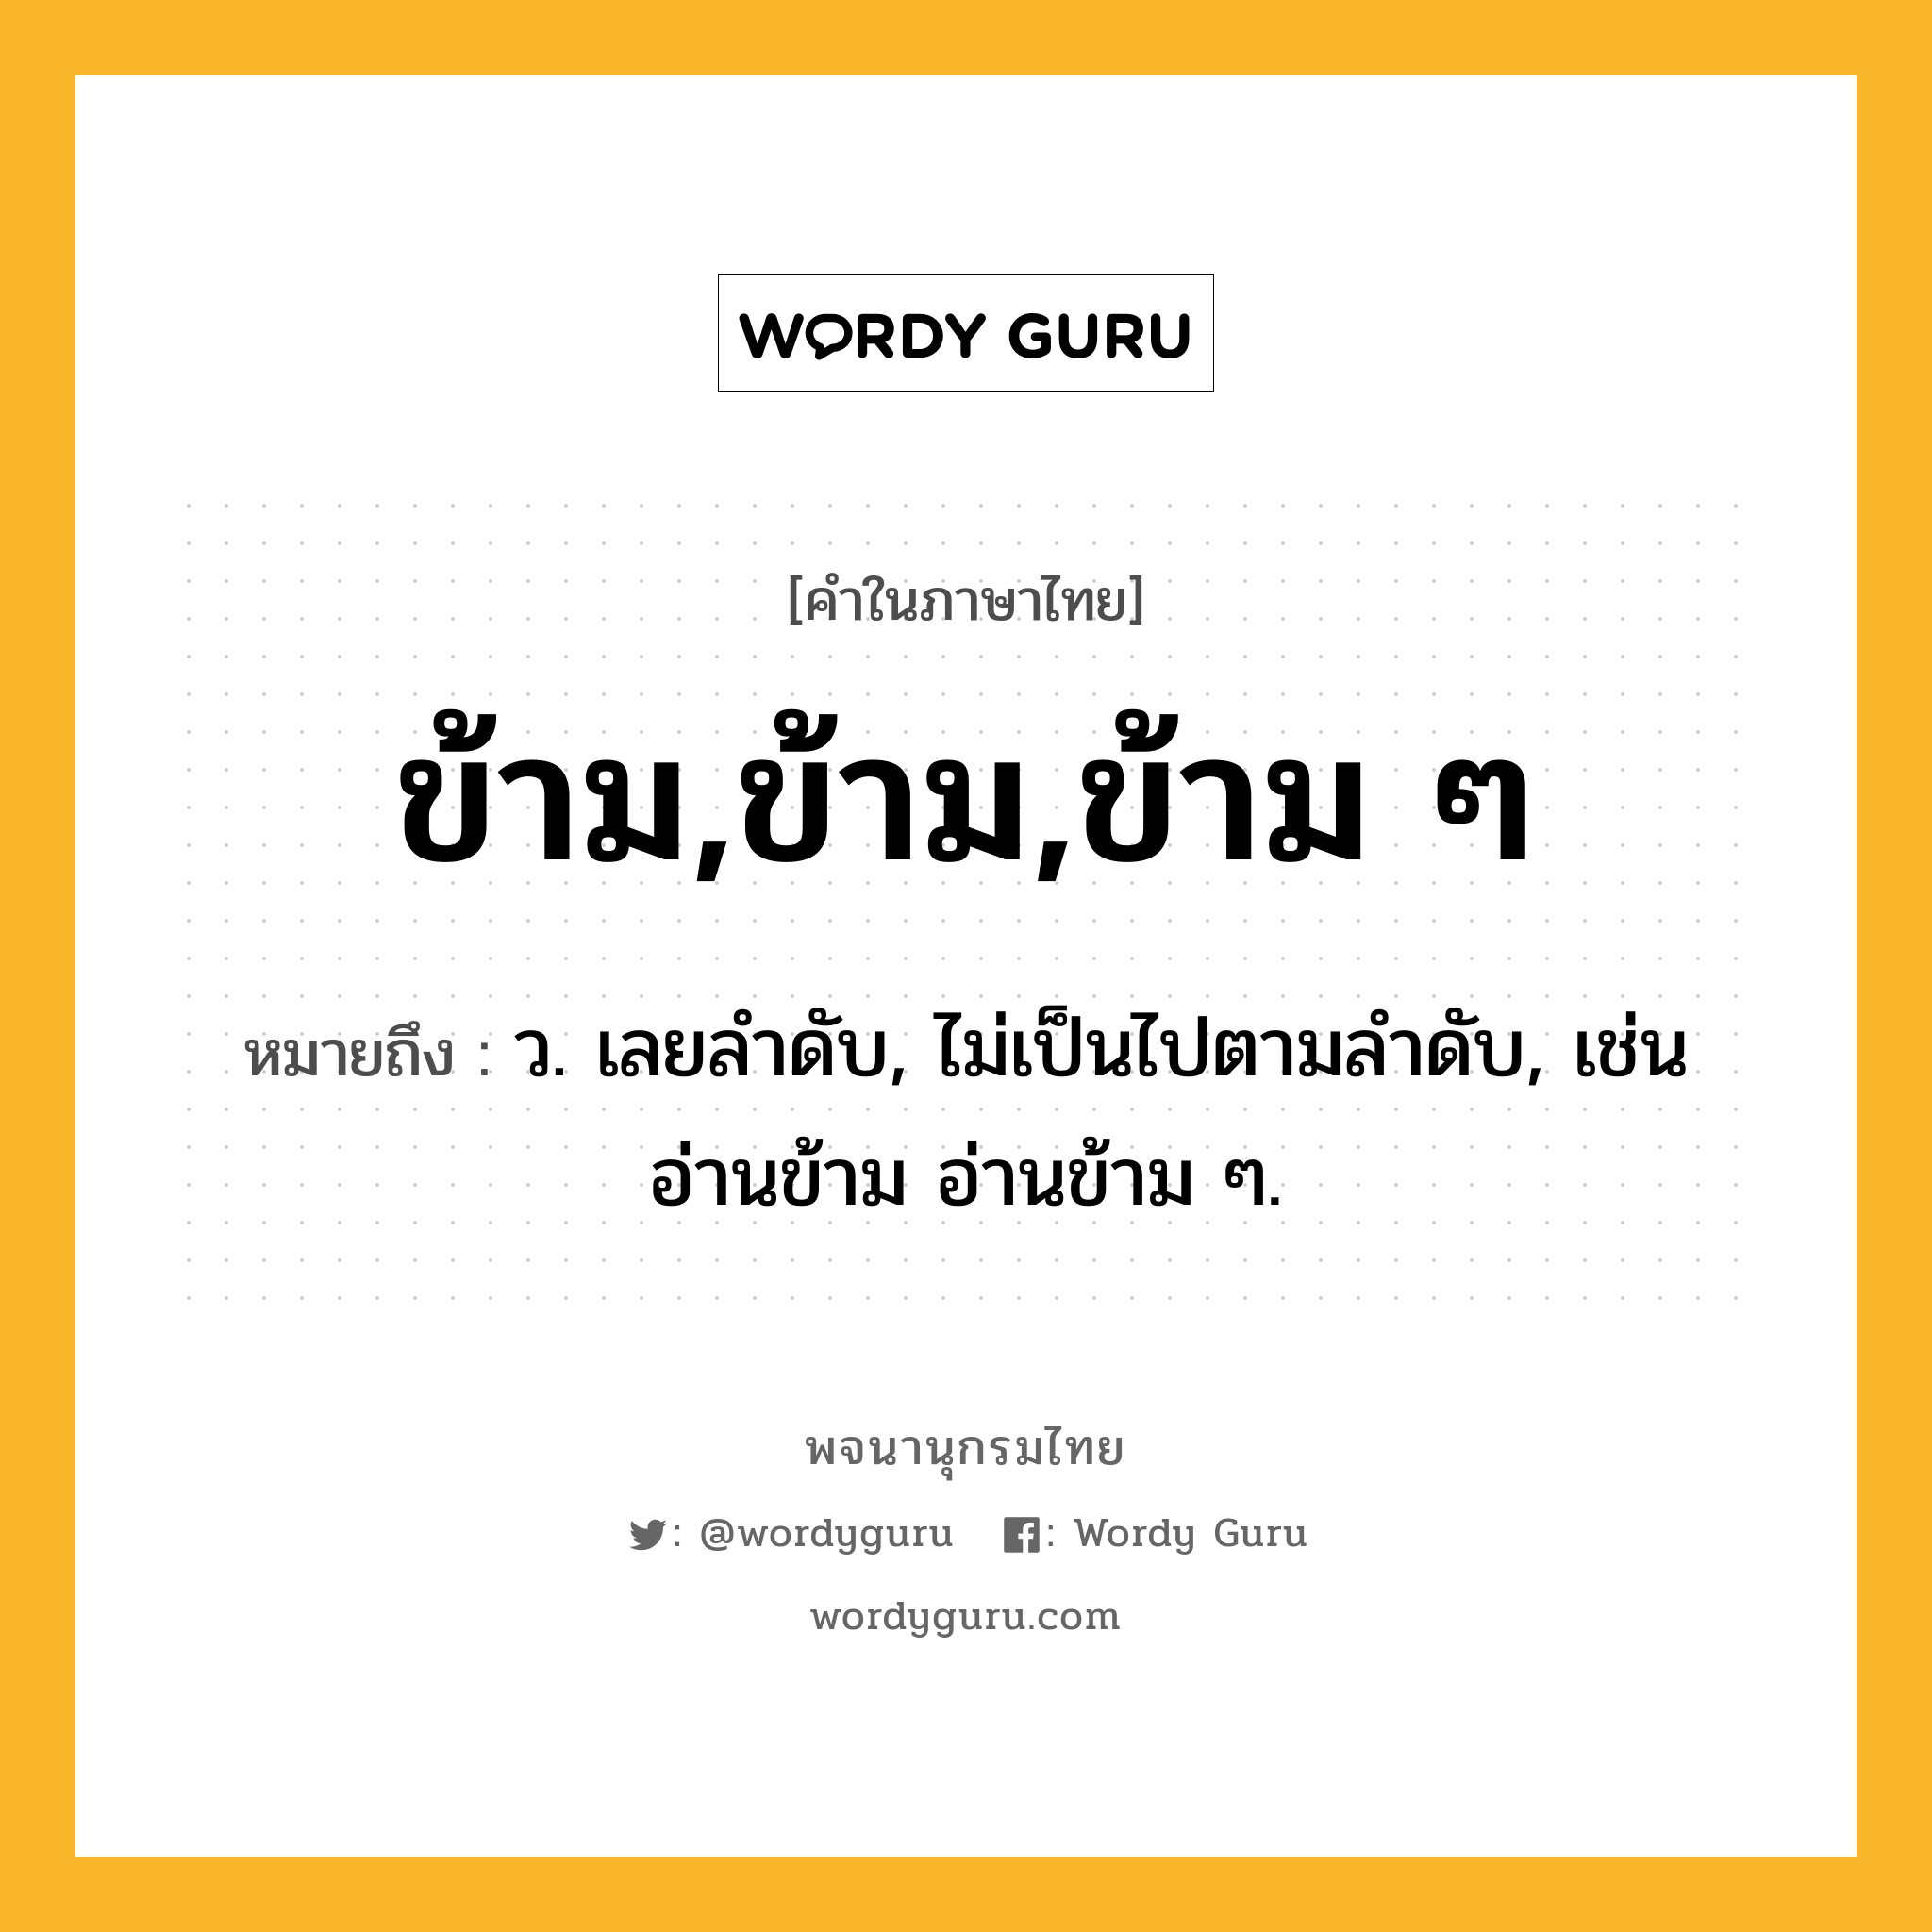 ข้าม,ข้าม,ข้าม ๆ หมายถึงอะไร?, คำในภาษาไทย ข้าม,ข้าม,ข้าม ๆ หมายถึง ว. เลยลําดับ, ไม่เป็นไปตามลําดับ, เช่น อ่านข้าม อ่านข้าม ๆ.